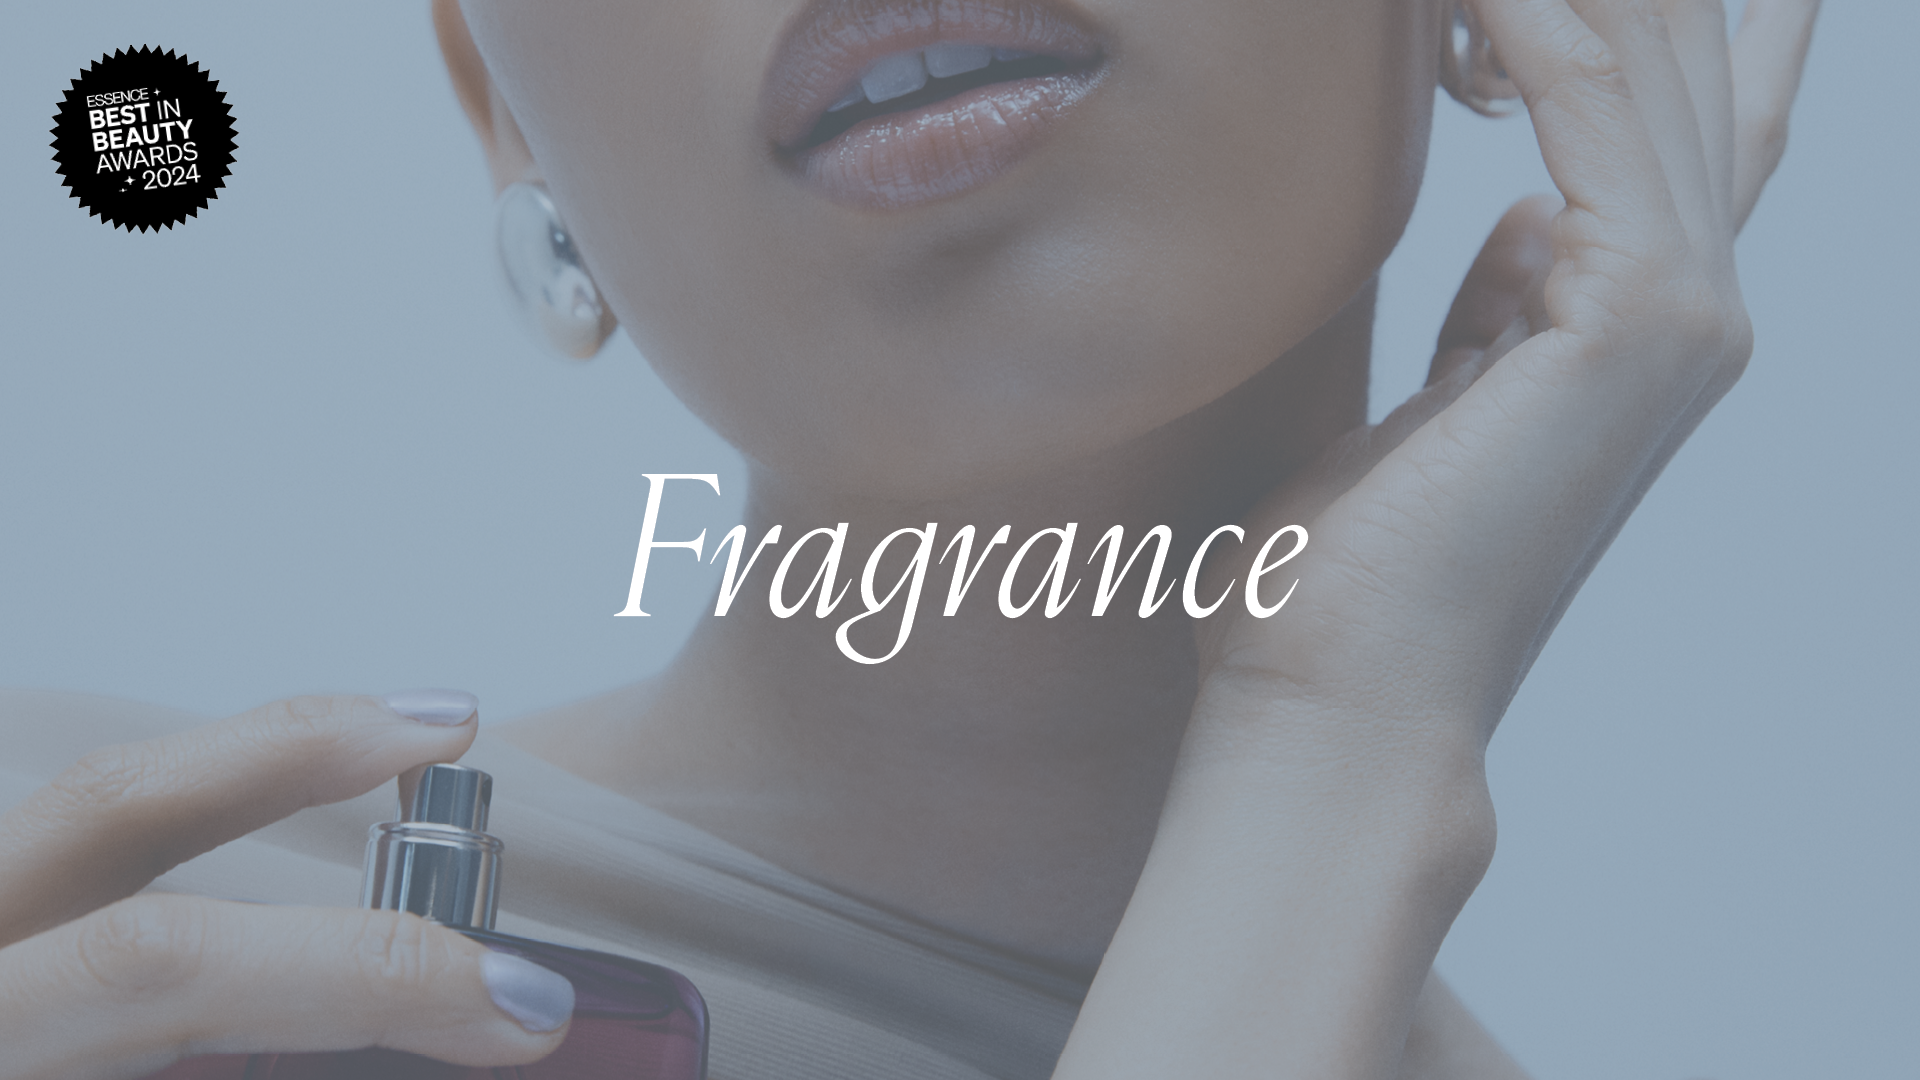 Best In Beauty Awards 2024: Fragrance